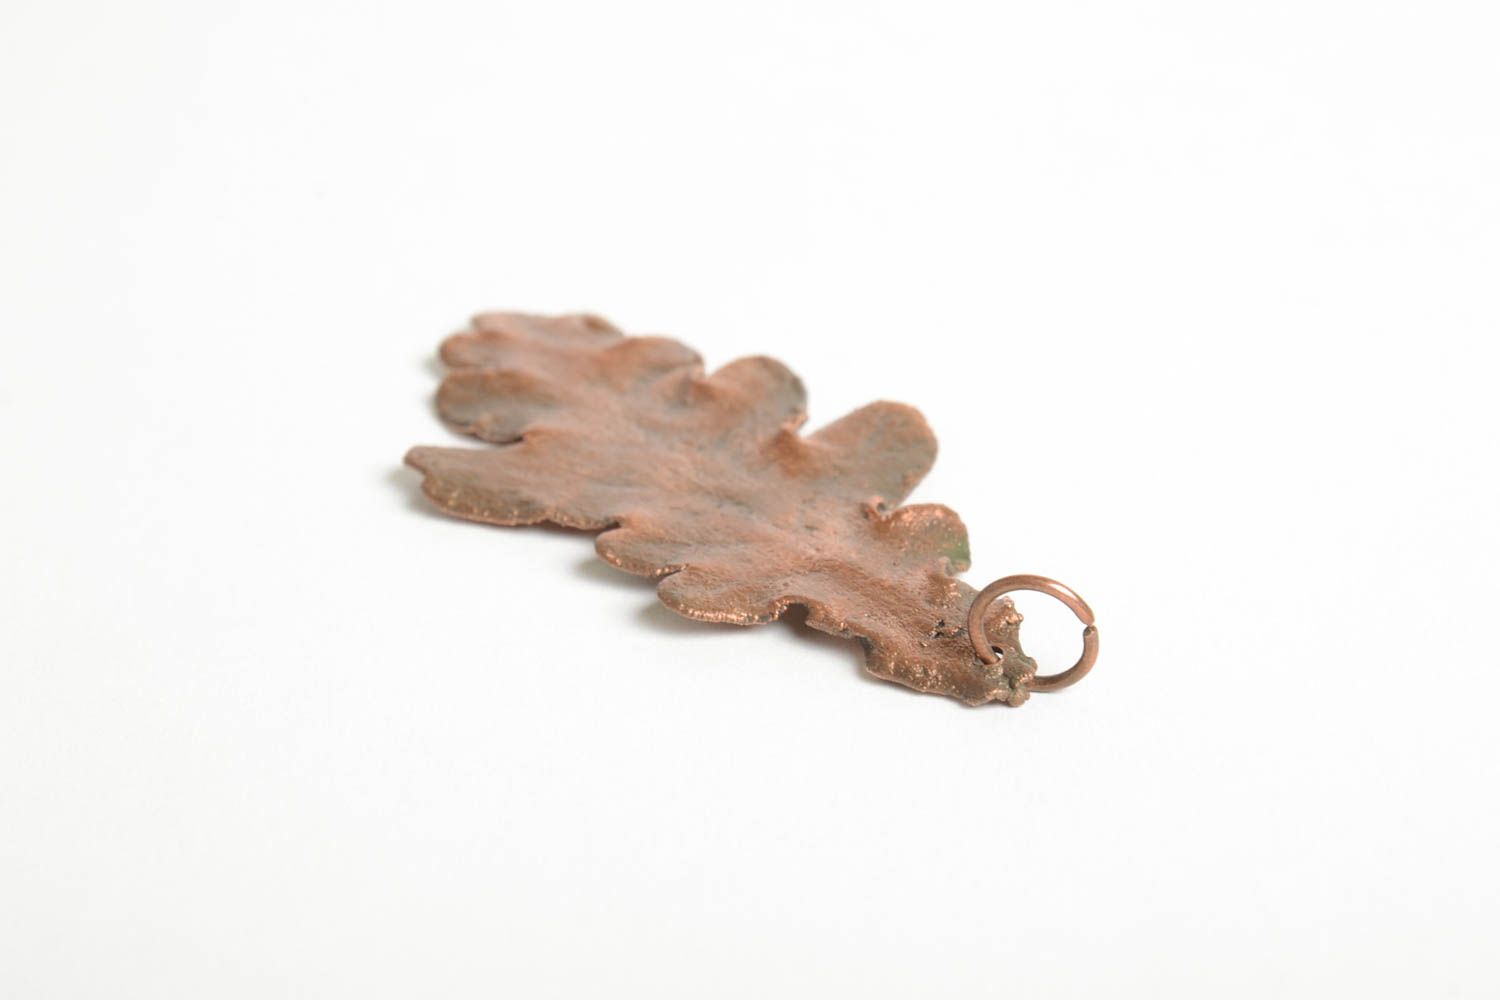 Unusual handmade metal pendant copper pendant designs fashion accessories photo 5